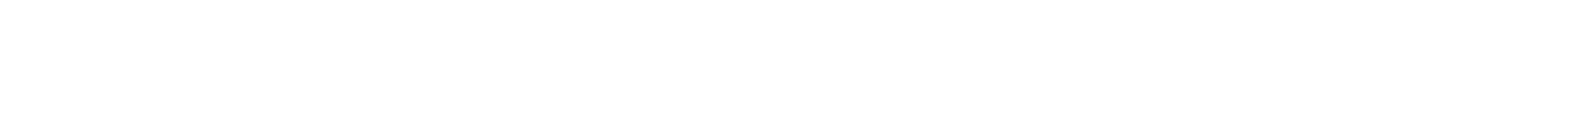 Regis Corporation
 logo large for dark backgrounds (transparent PNG)